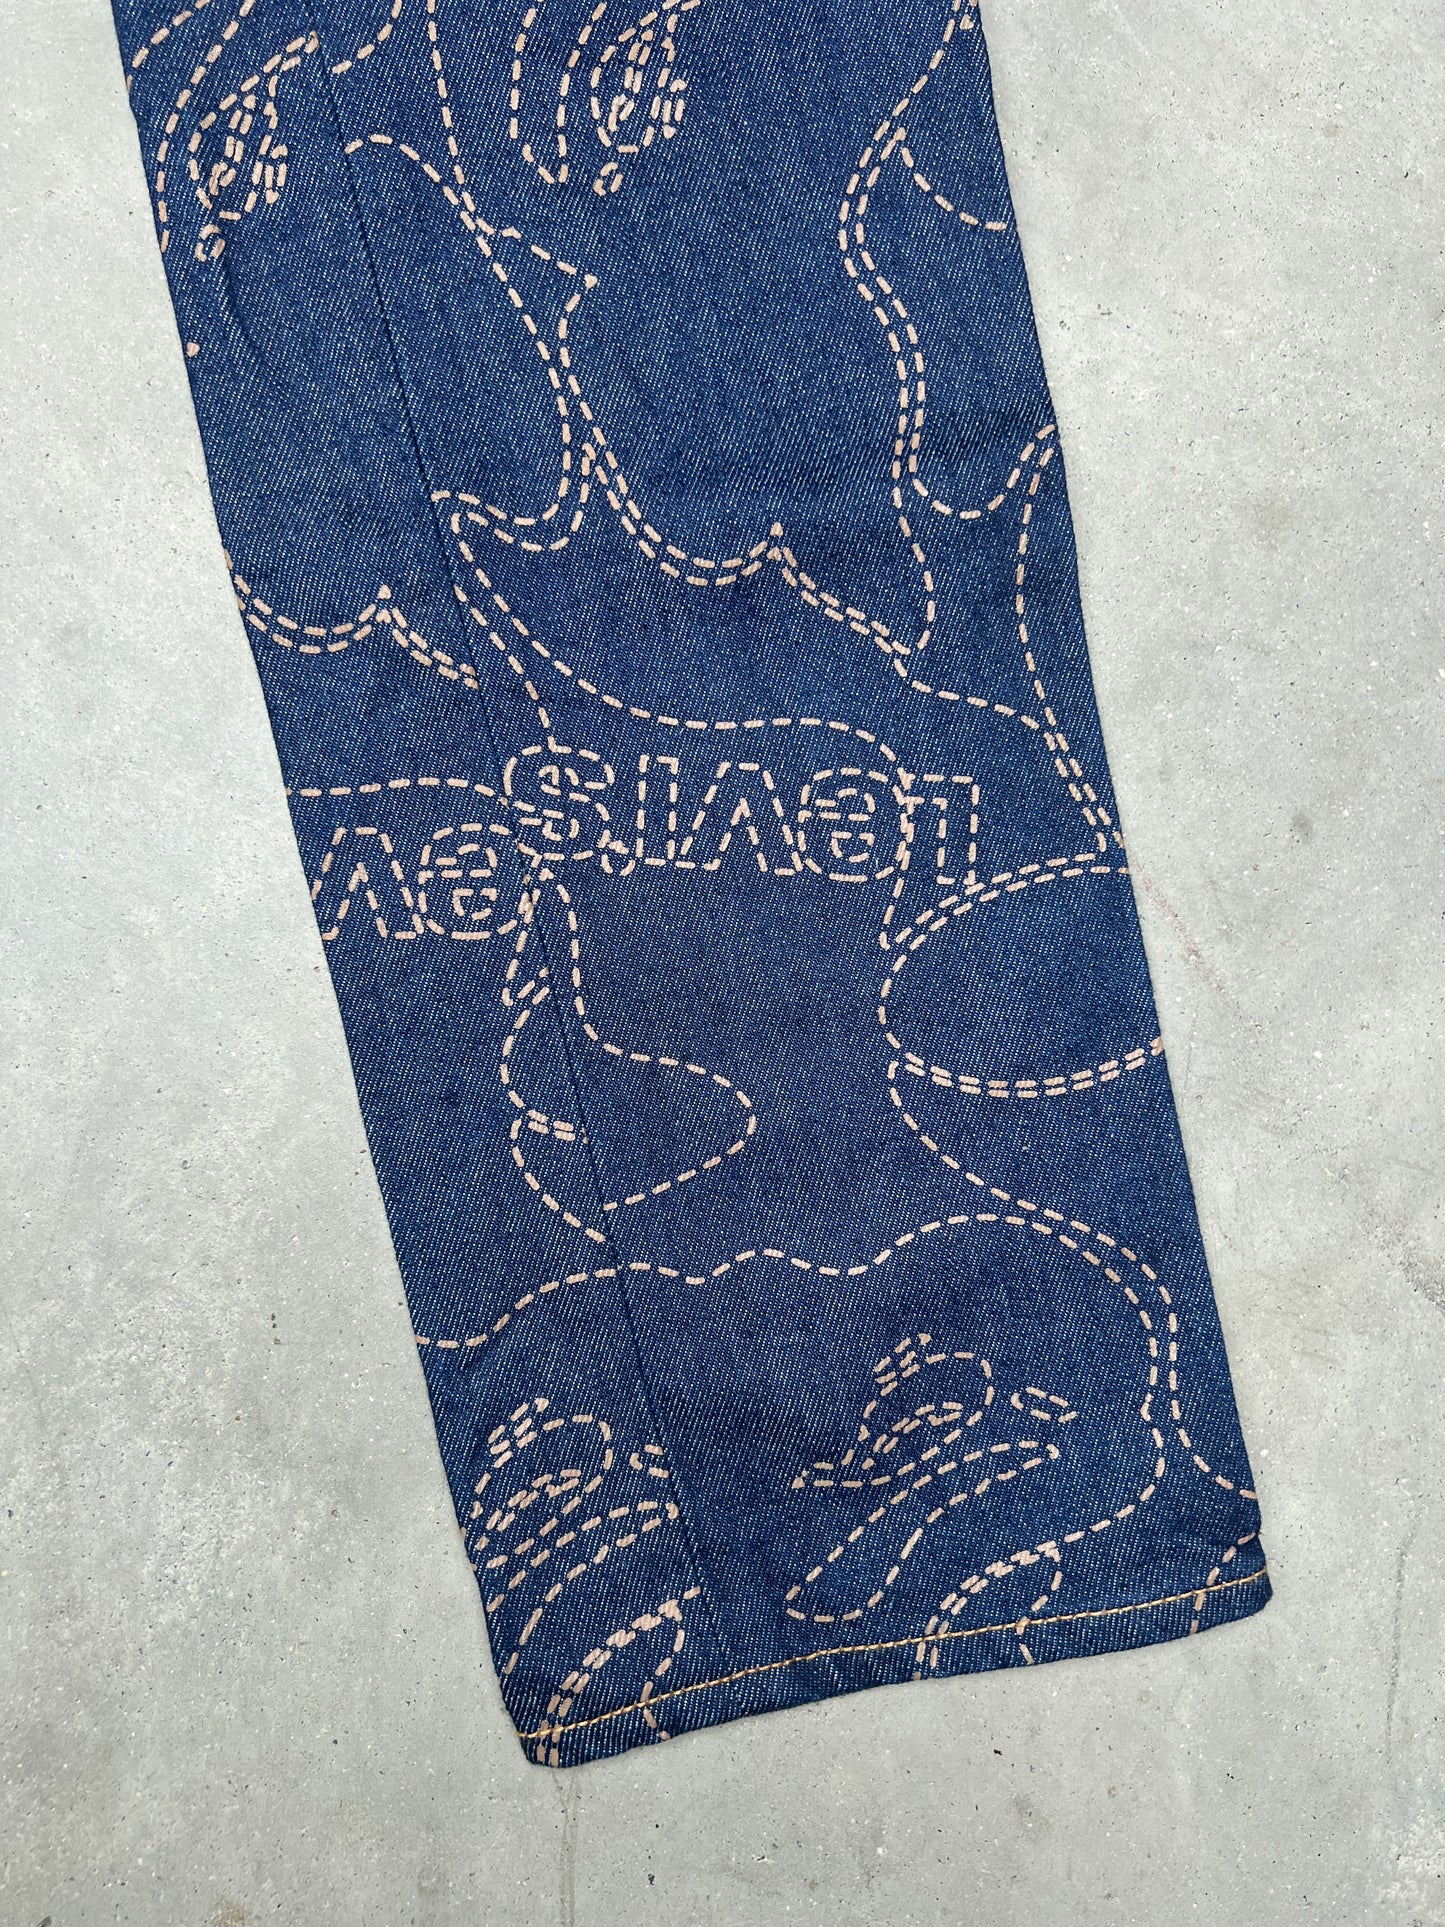 Levi's x BAPE Camo 501 93 Denim Jeans